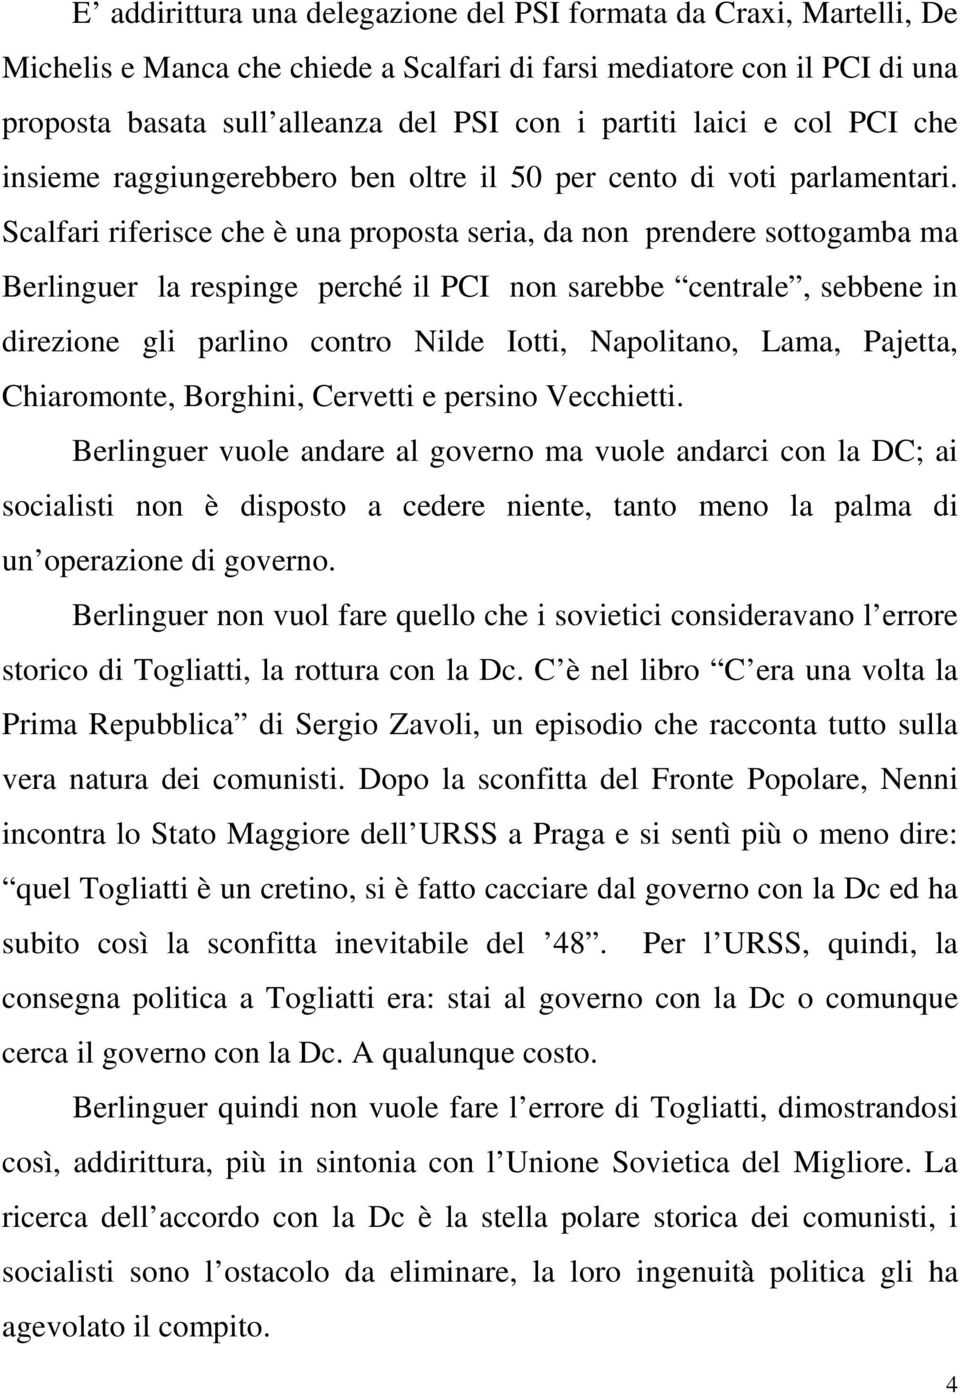 Scalfari riferisce che è una proposta seria, da non prendere sottogamba ma Berlinguer la respinge perché il PCI non sarebbe centrale, sebbene in direzione gli parlino contro Nilde Iotti, Napolitano,